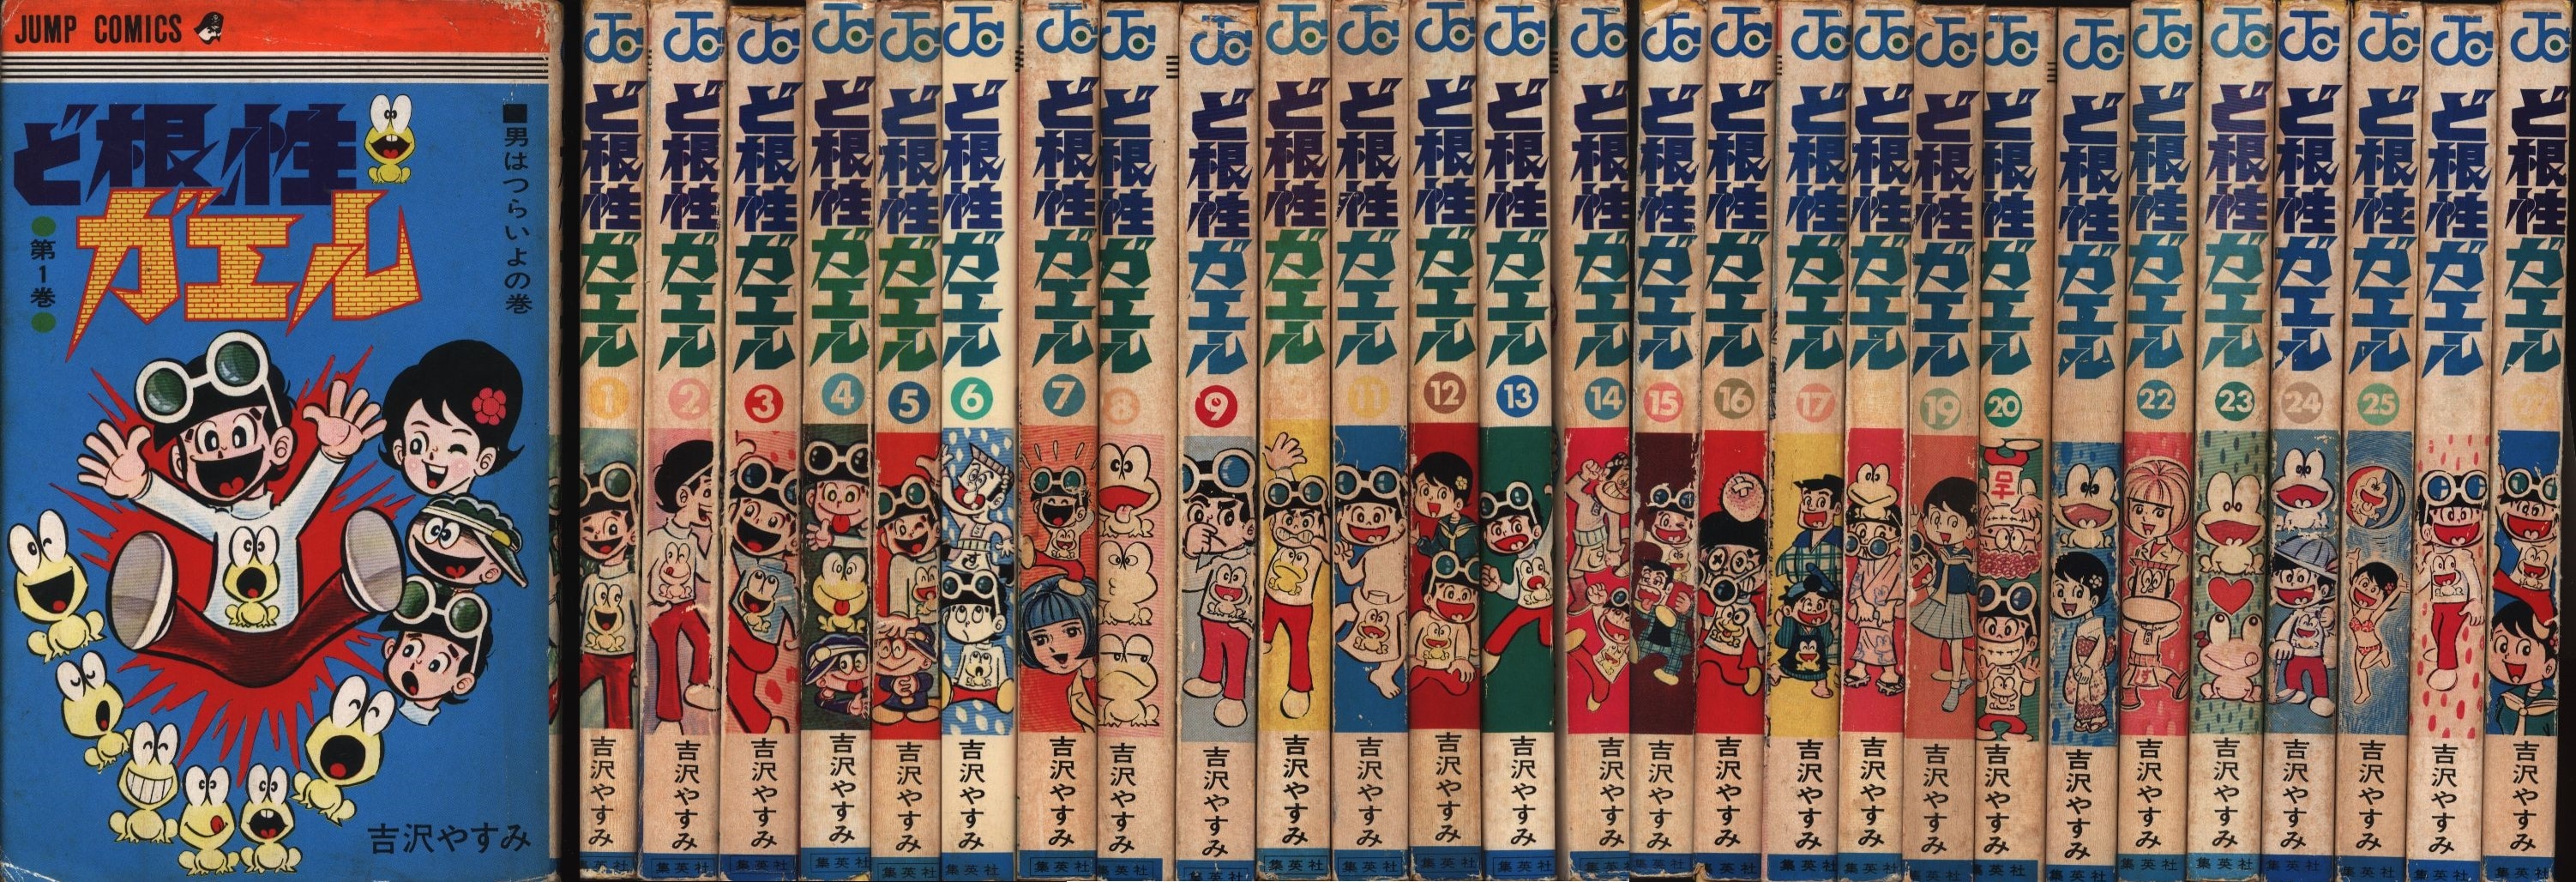 集英社 ジャンプコミックス 吉沢やすみ ど根性ガエル全27巻 再版セット